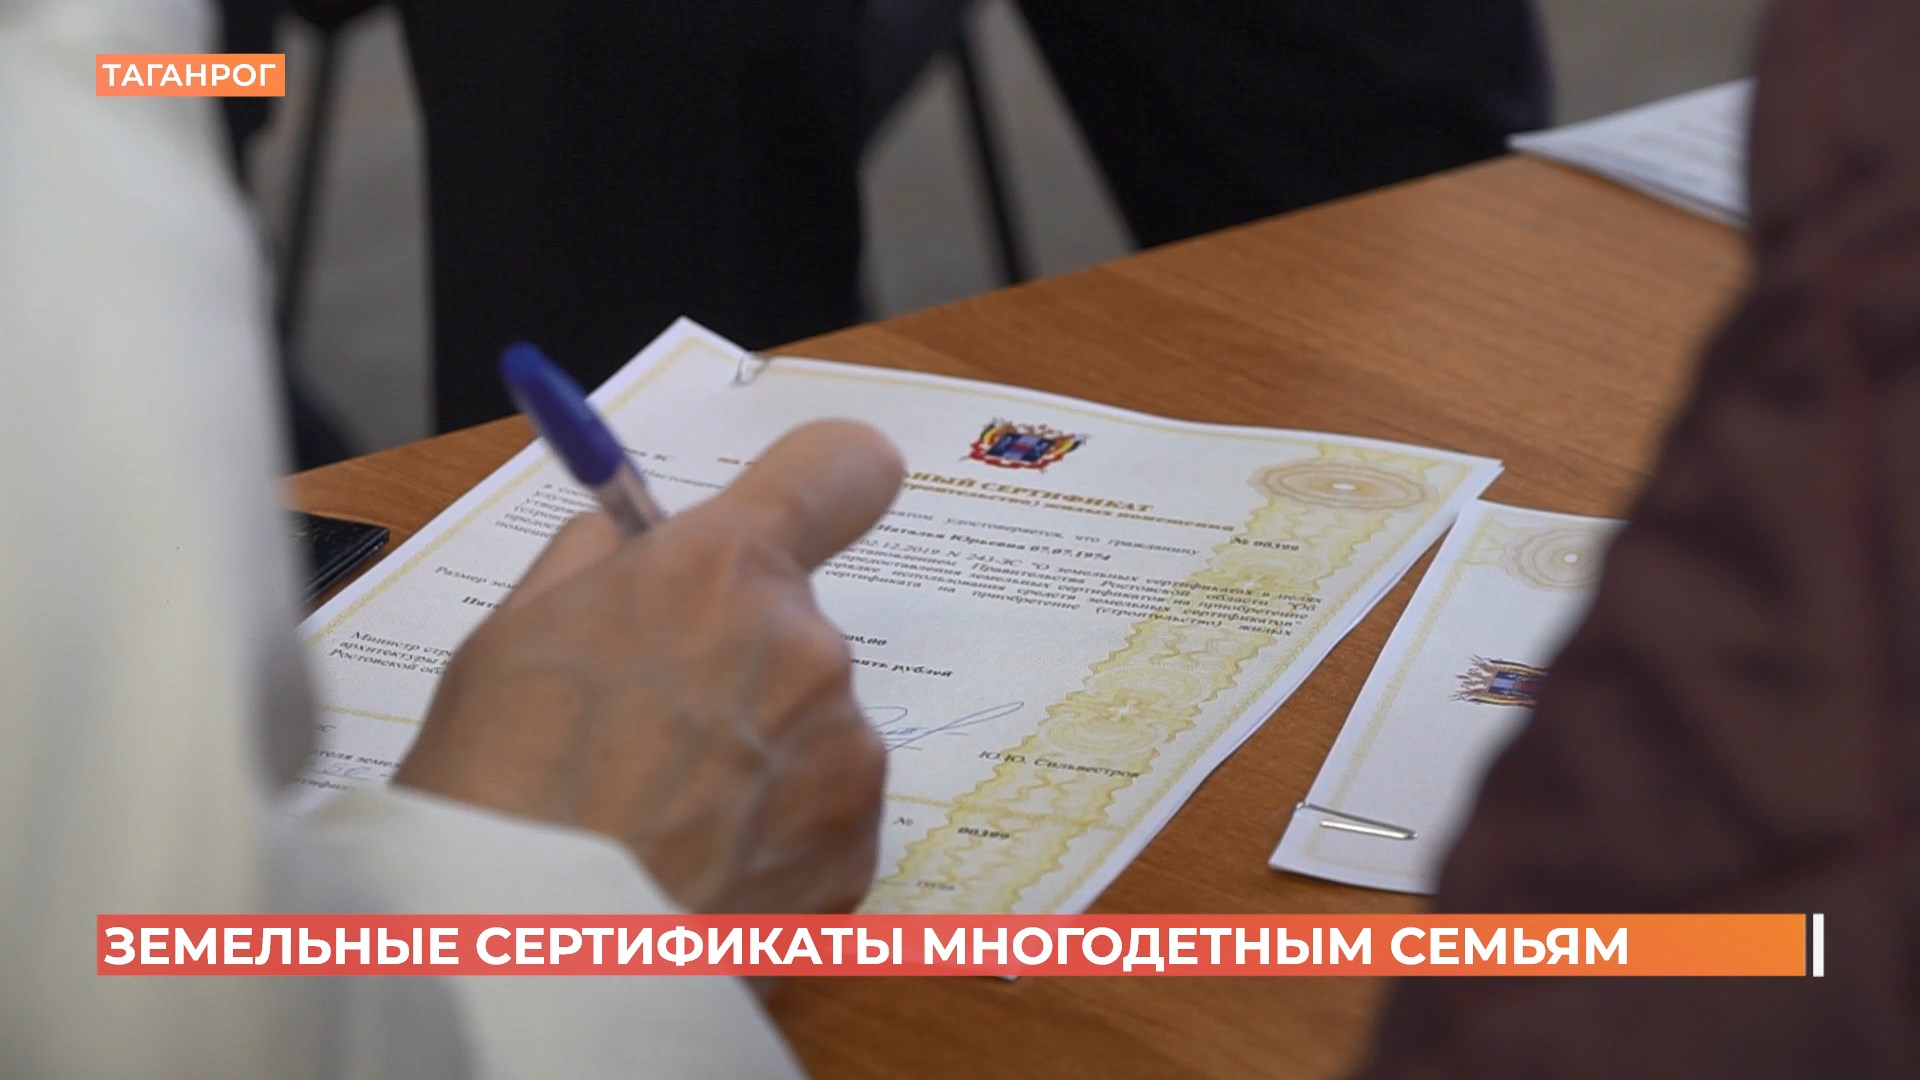 Многодетным семьям вручили  земельные сертификаты в Таганроге